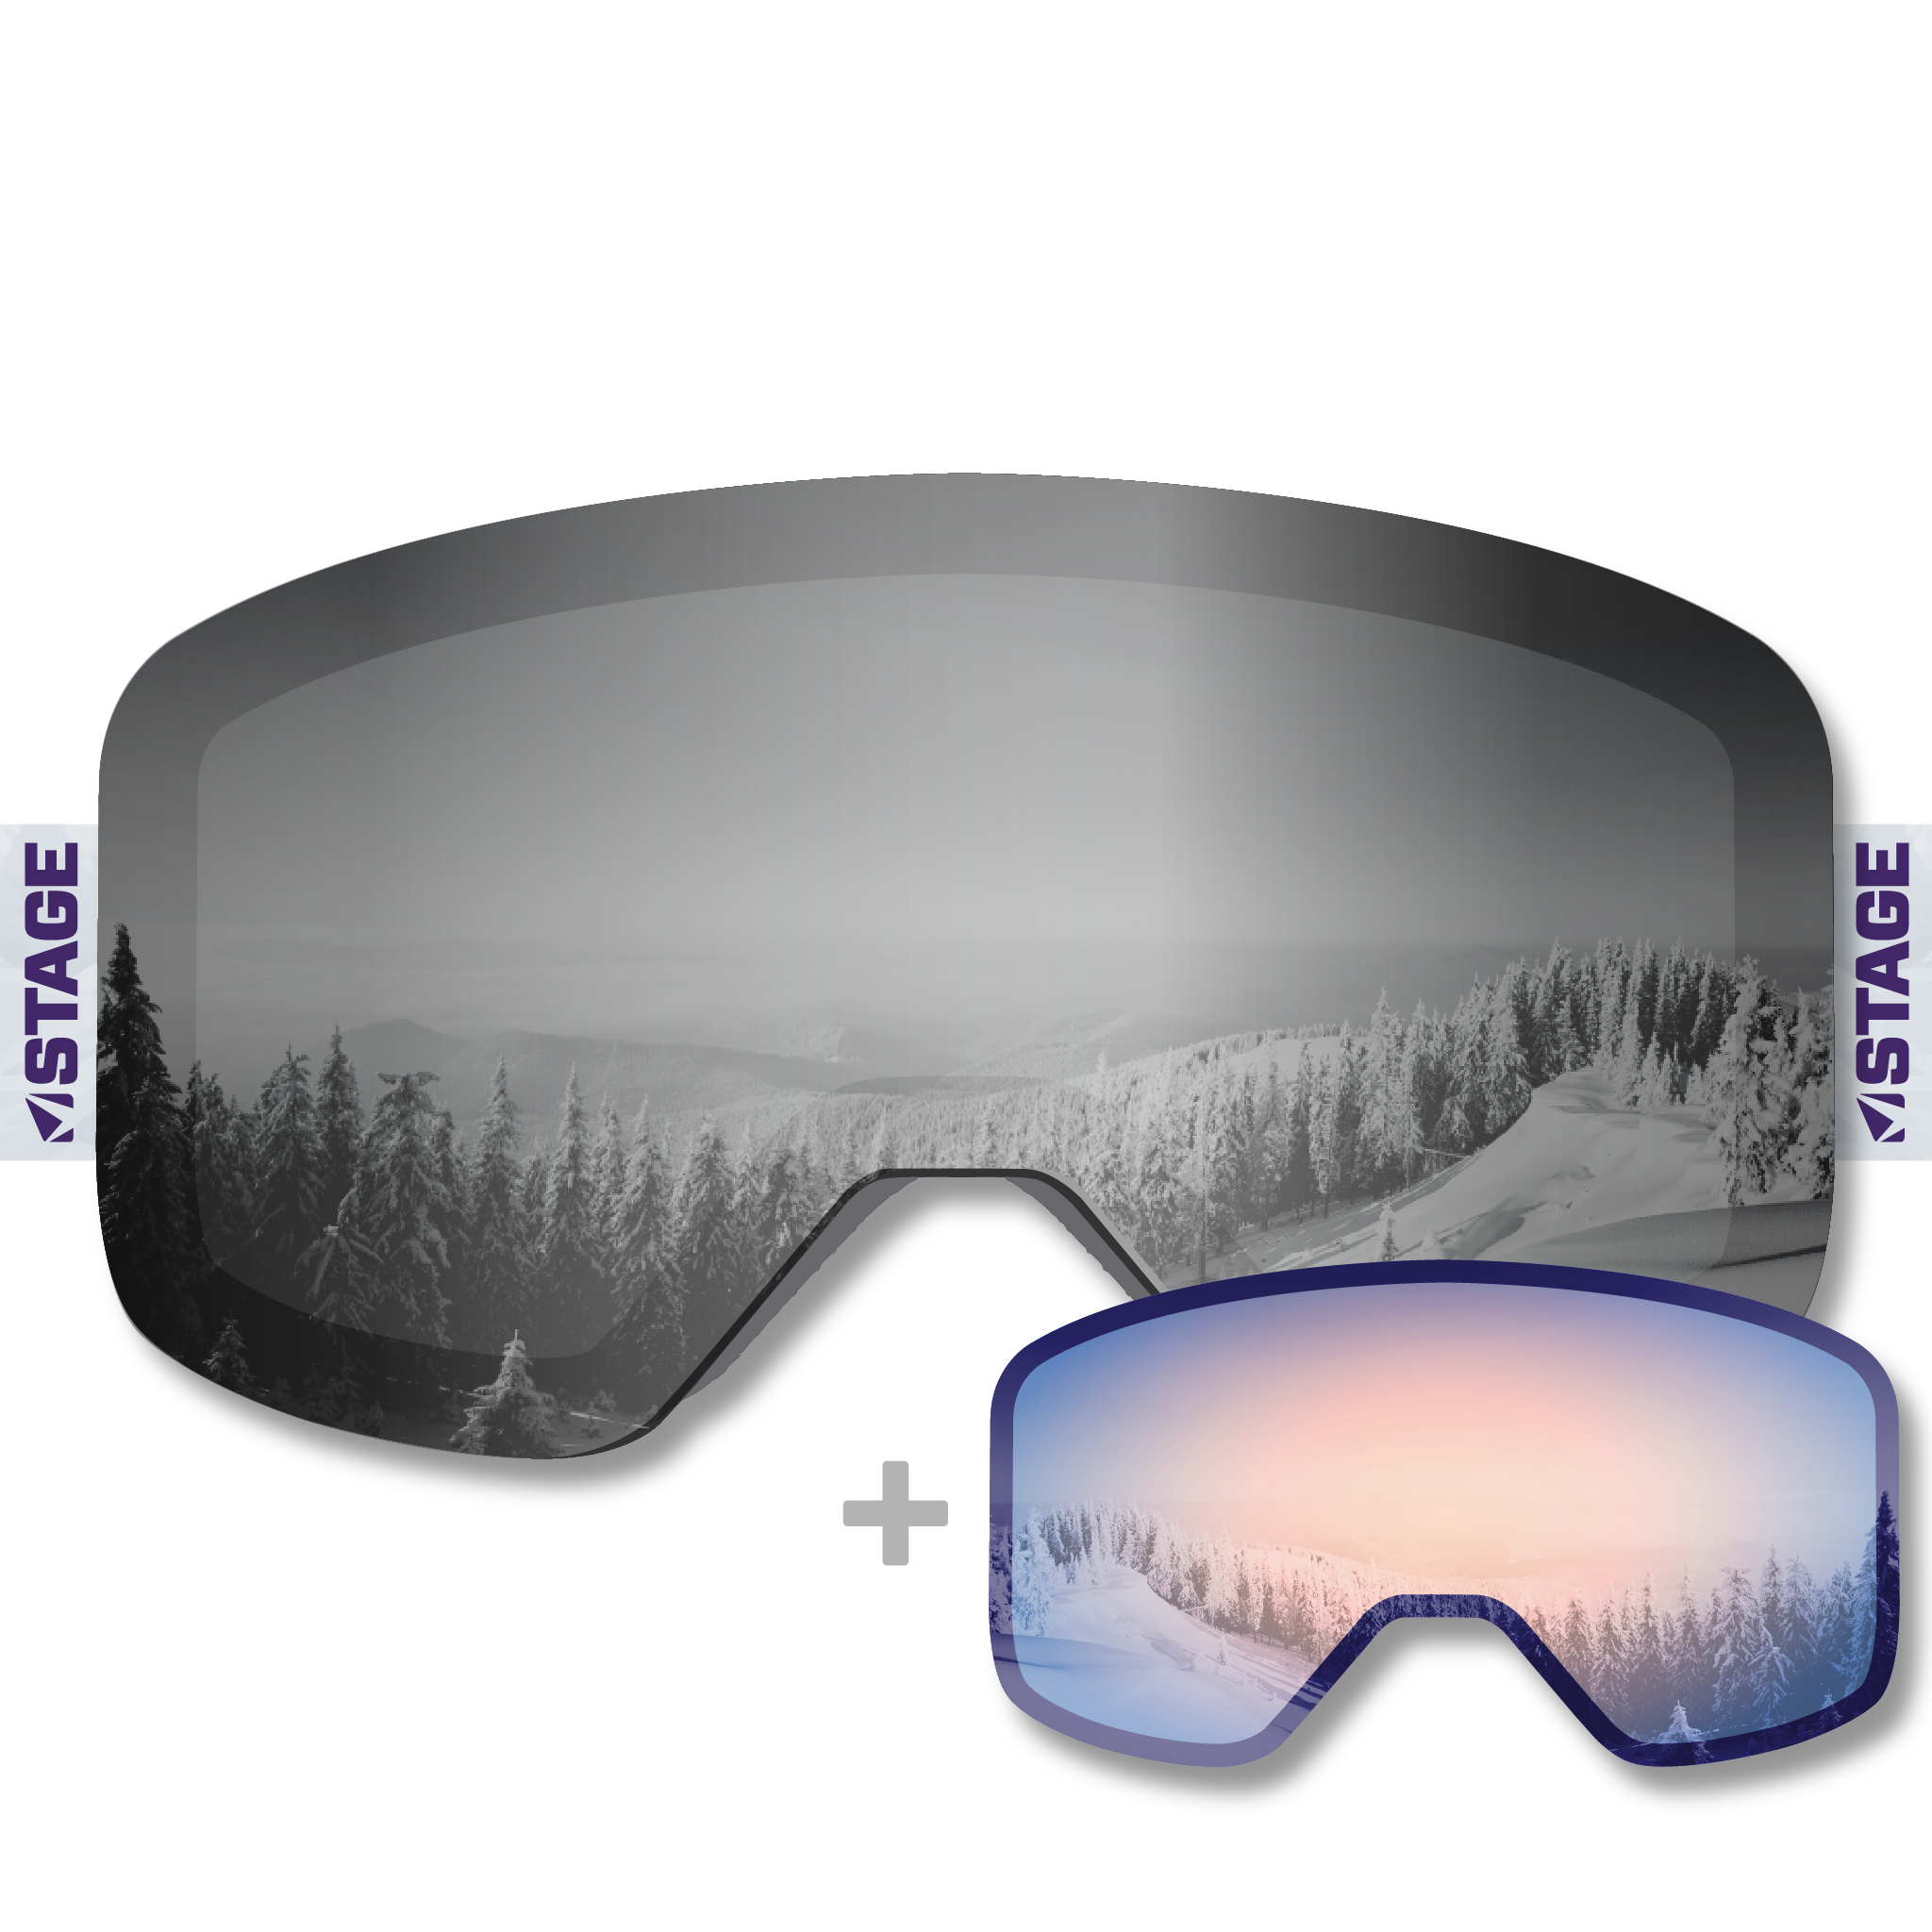 Boardslide Mission Propnetic - Magnetic Ski Goggle + Bonus Lens